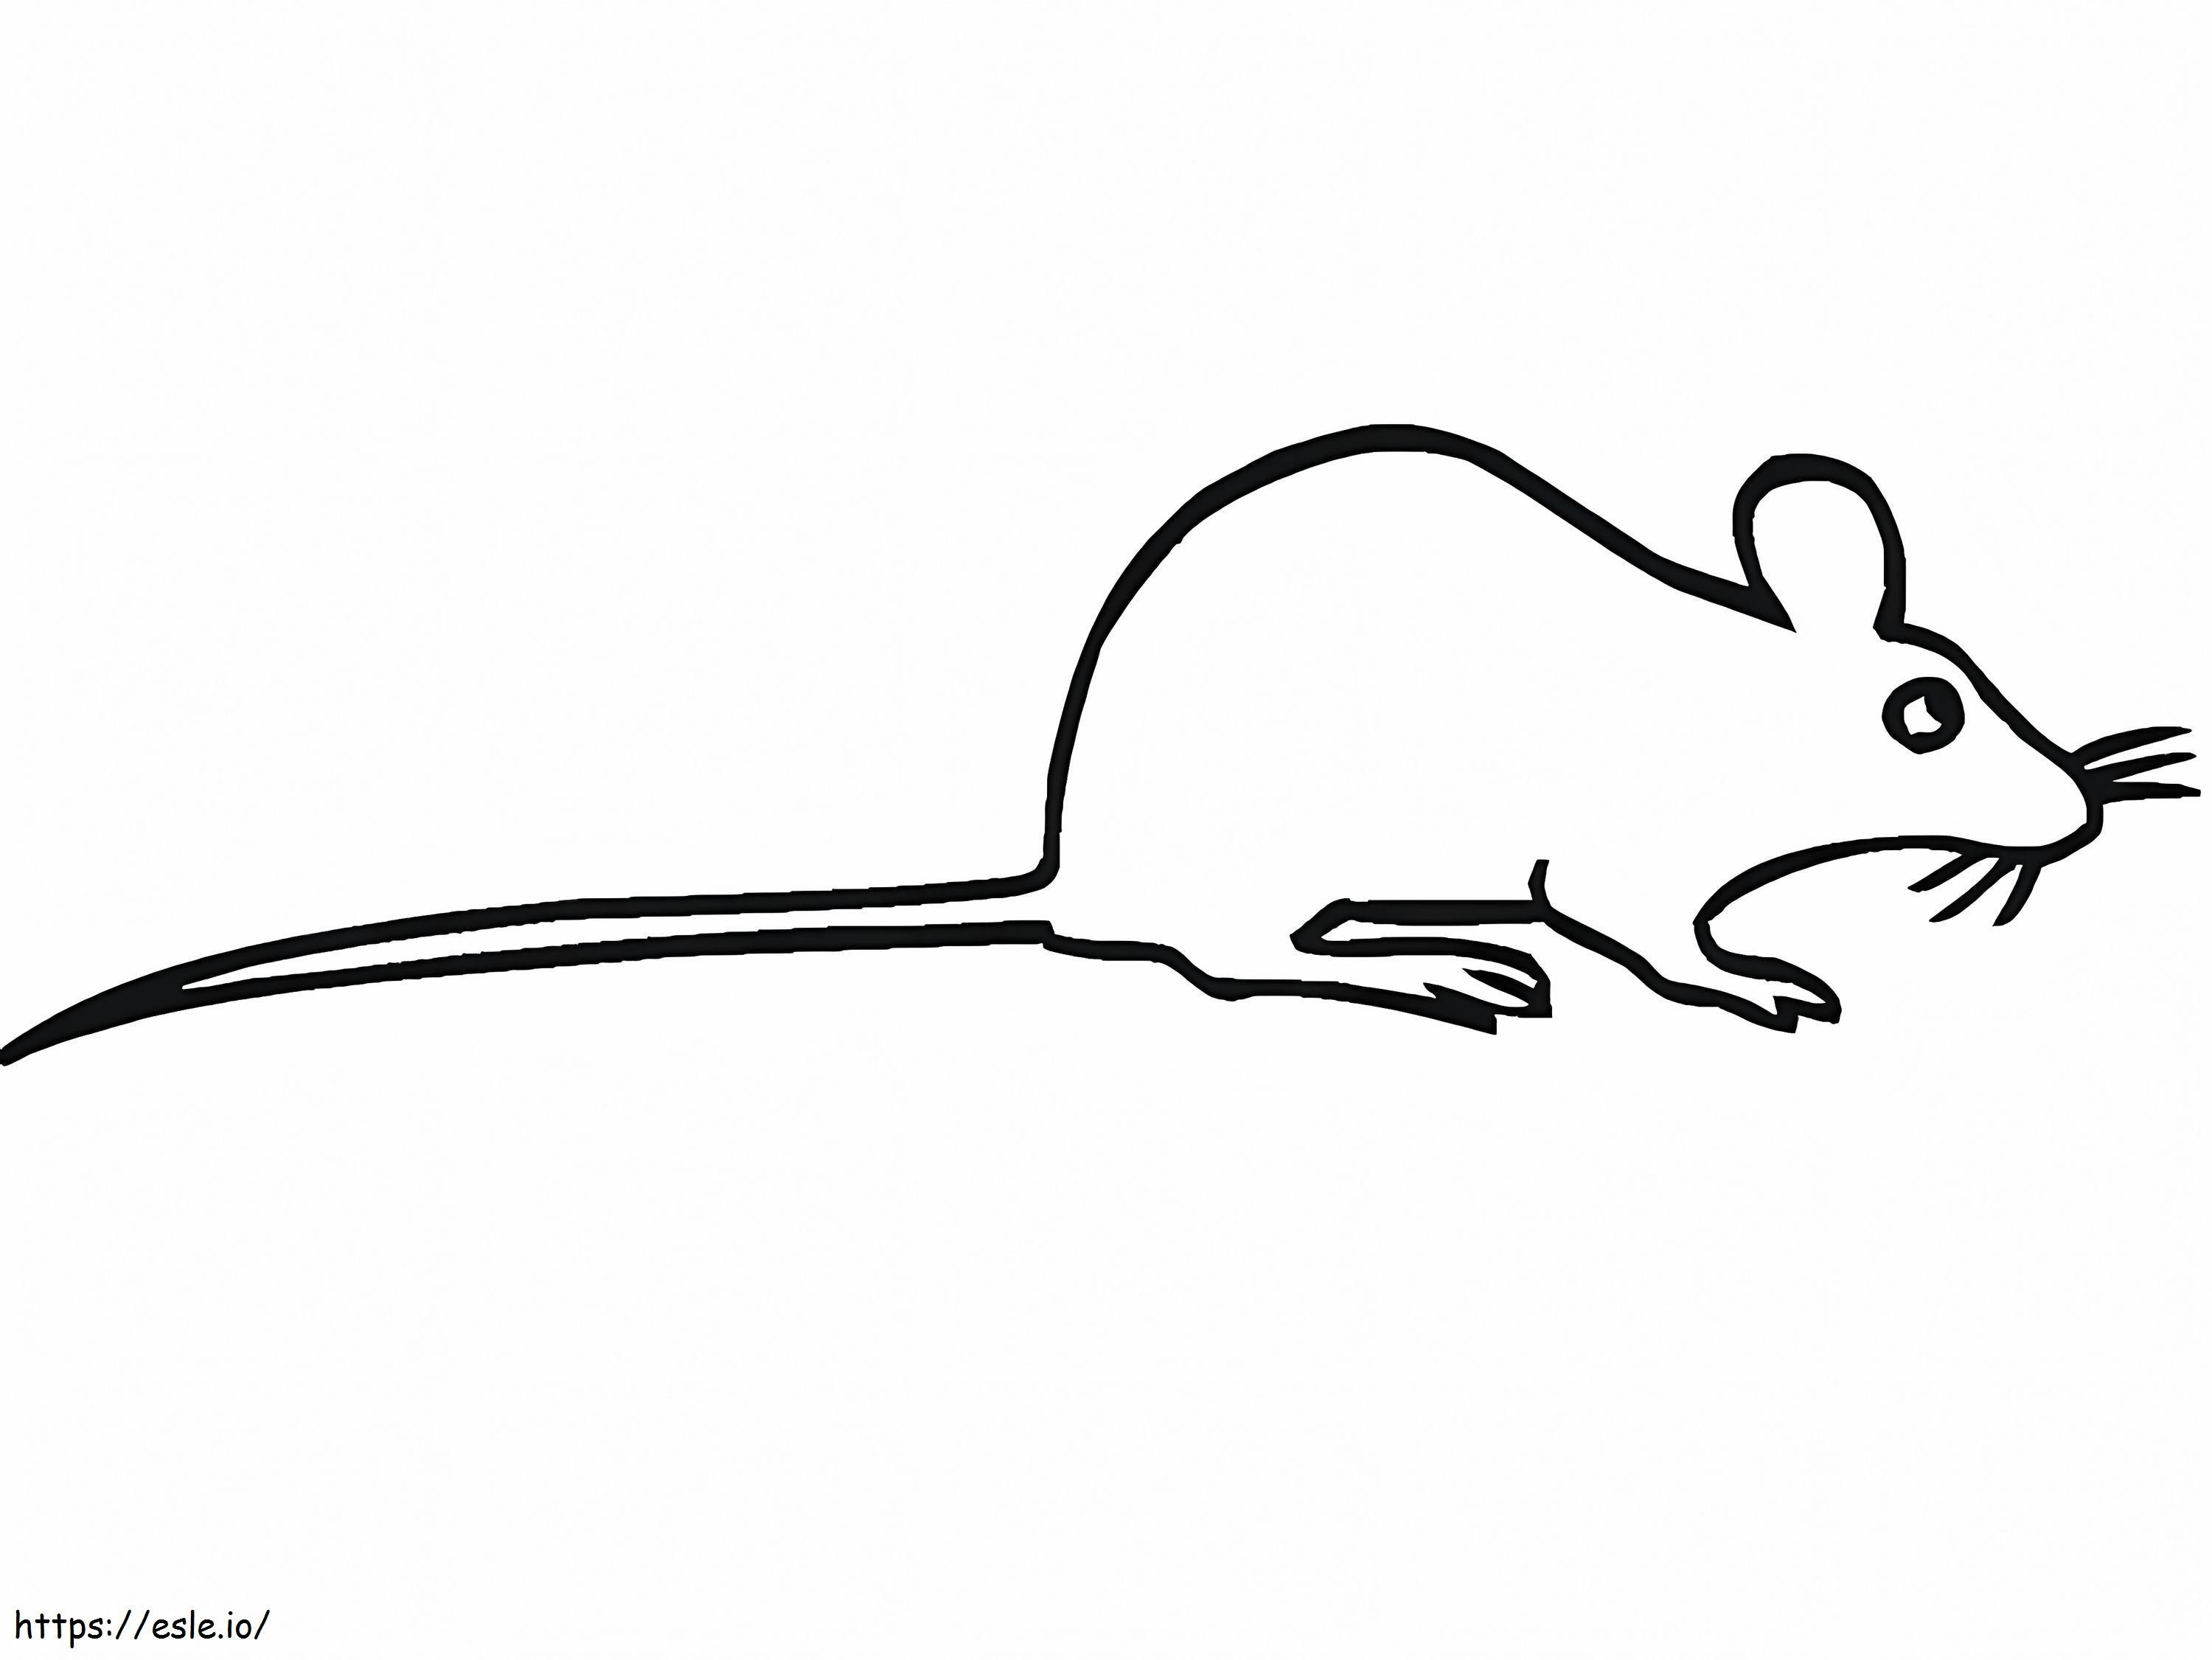 Erittäin yksinkertainen rotta värityskuva